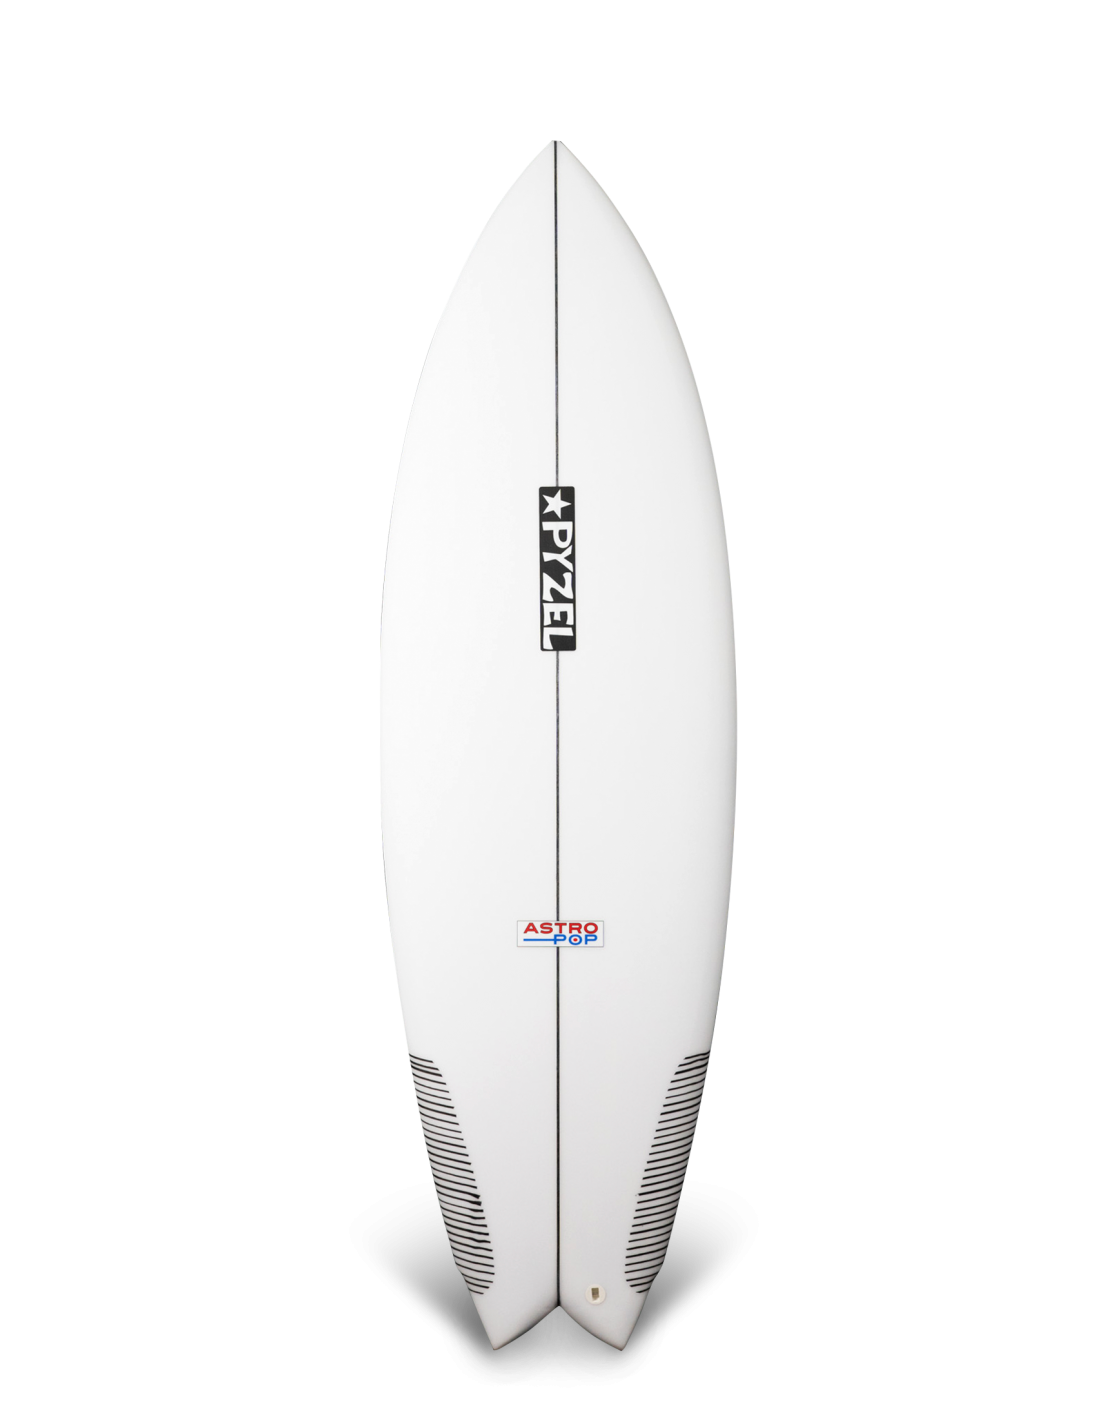 Planche de surf Pyzel Astro pop 5'5" PU FCS II 5 Fins - 27,2L